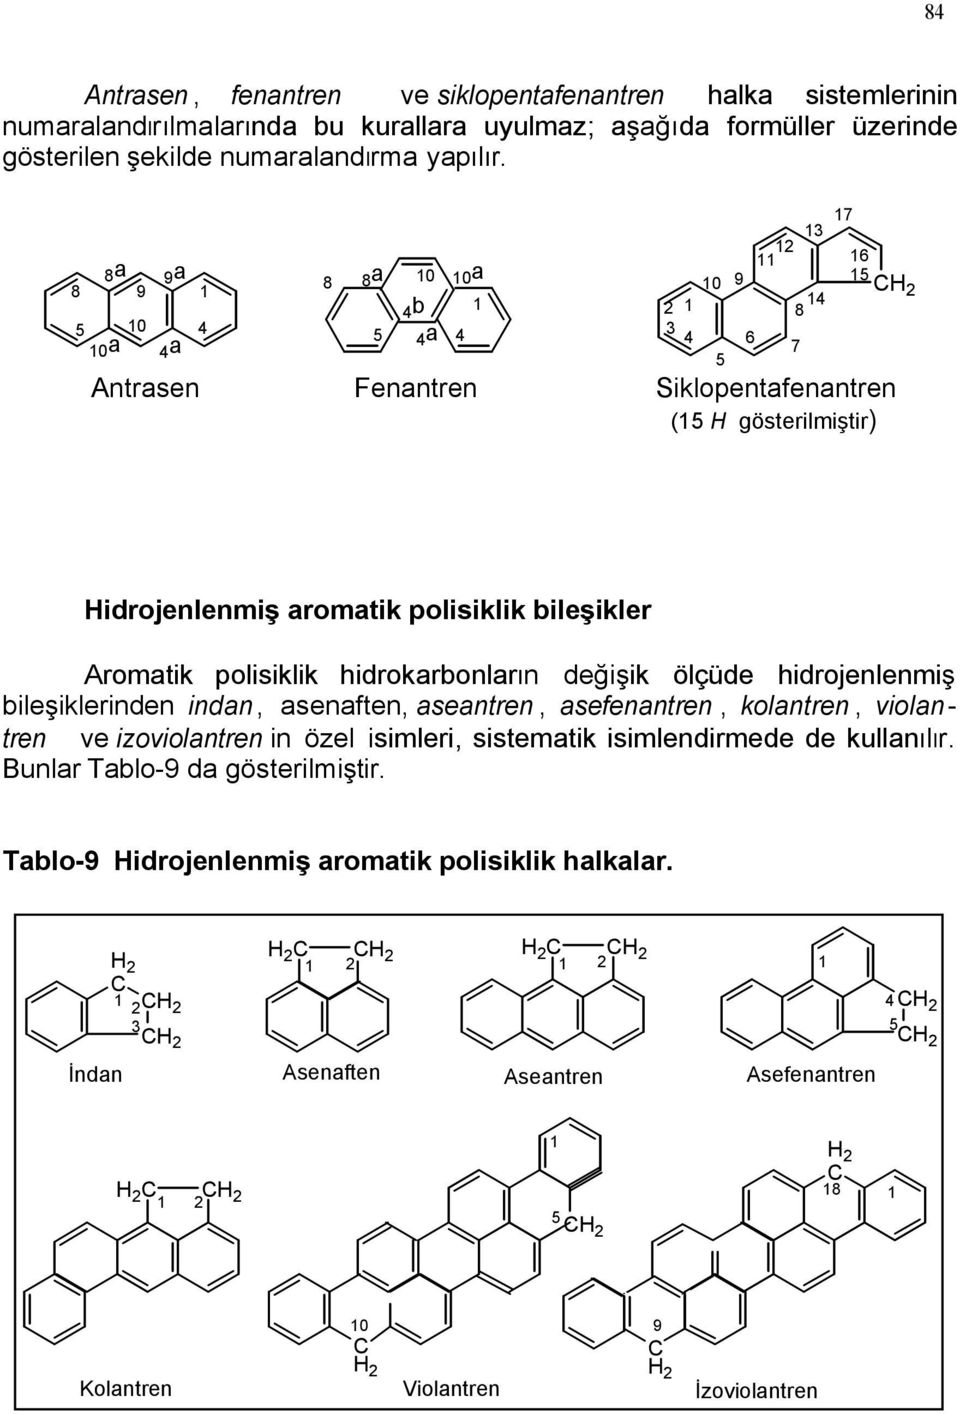 a 0a a 0 a a 0 0a b a 7 0 6 7 Antrasen Fenantren Siklopentafenantren ( gösterilmiştir) 6 idrojenlenmiş aromatik polisiklik bileşikler Aromatik polisiklik hidrokarbonların